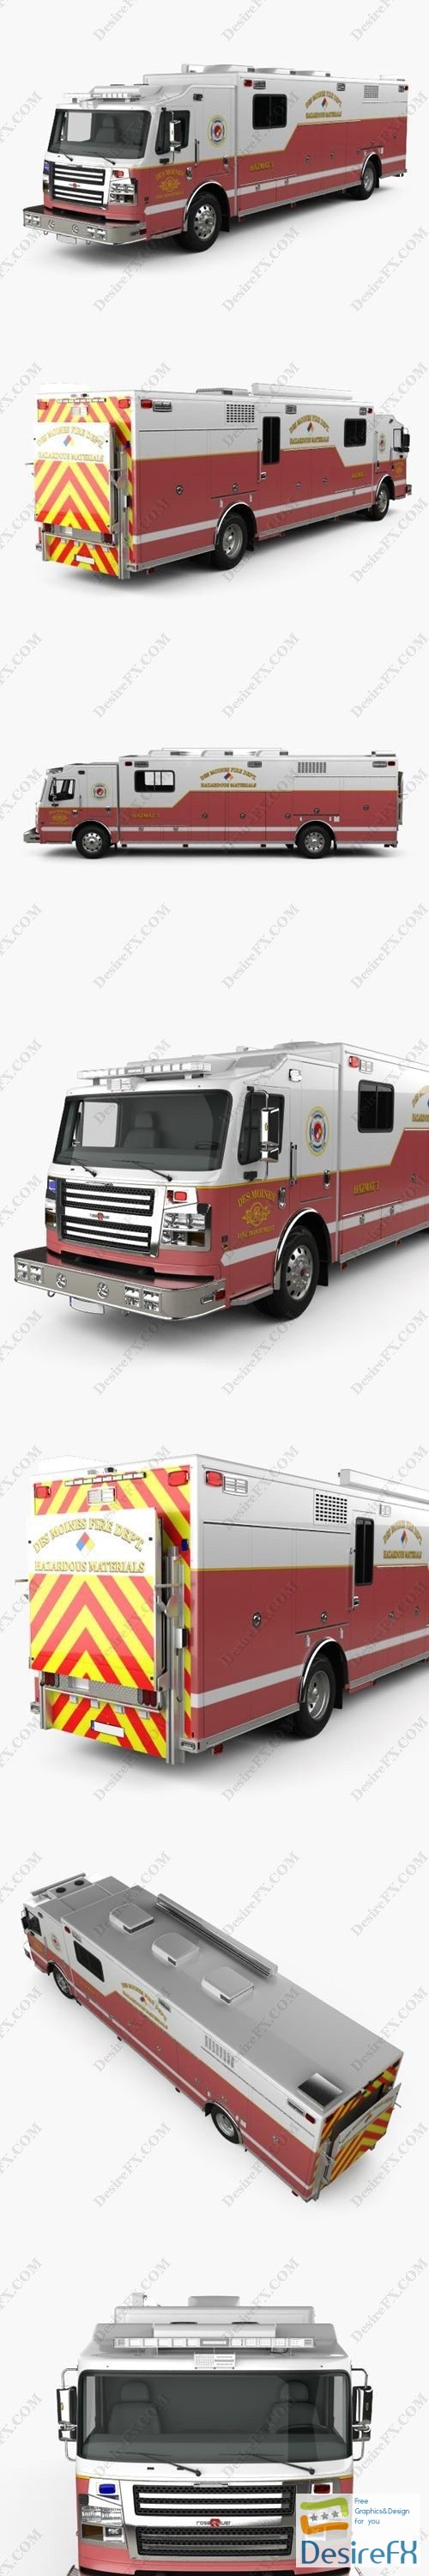 Rosenbauer Walk In Rescue Fire Truck 2017 3D Model